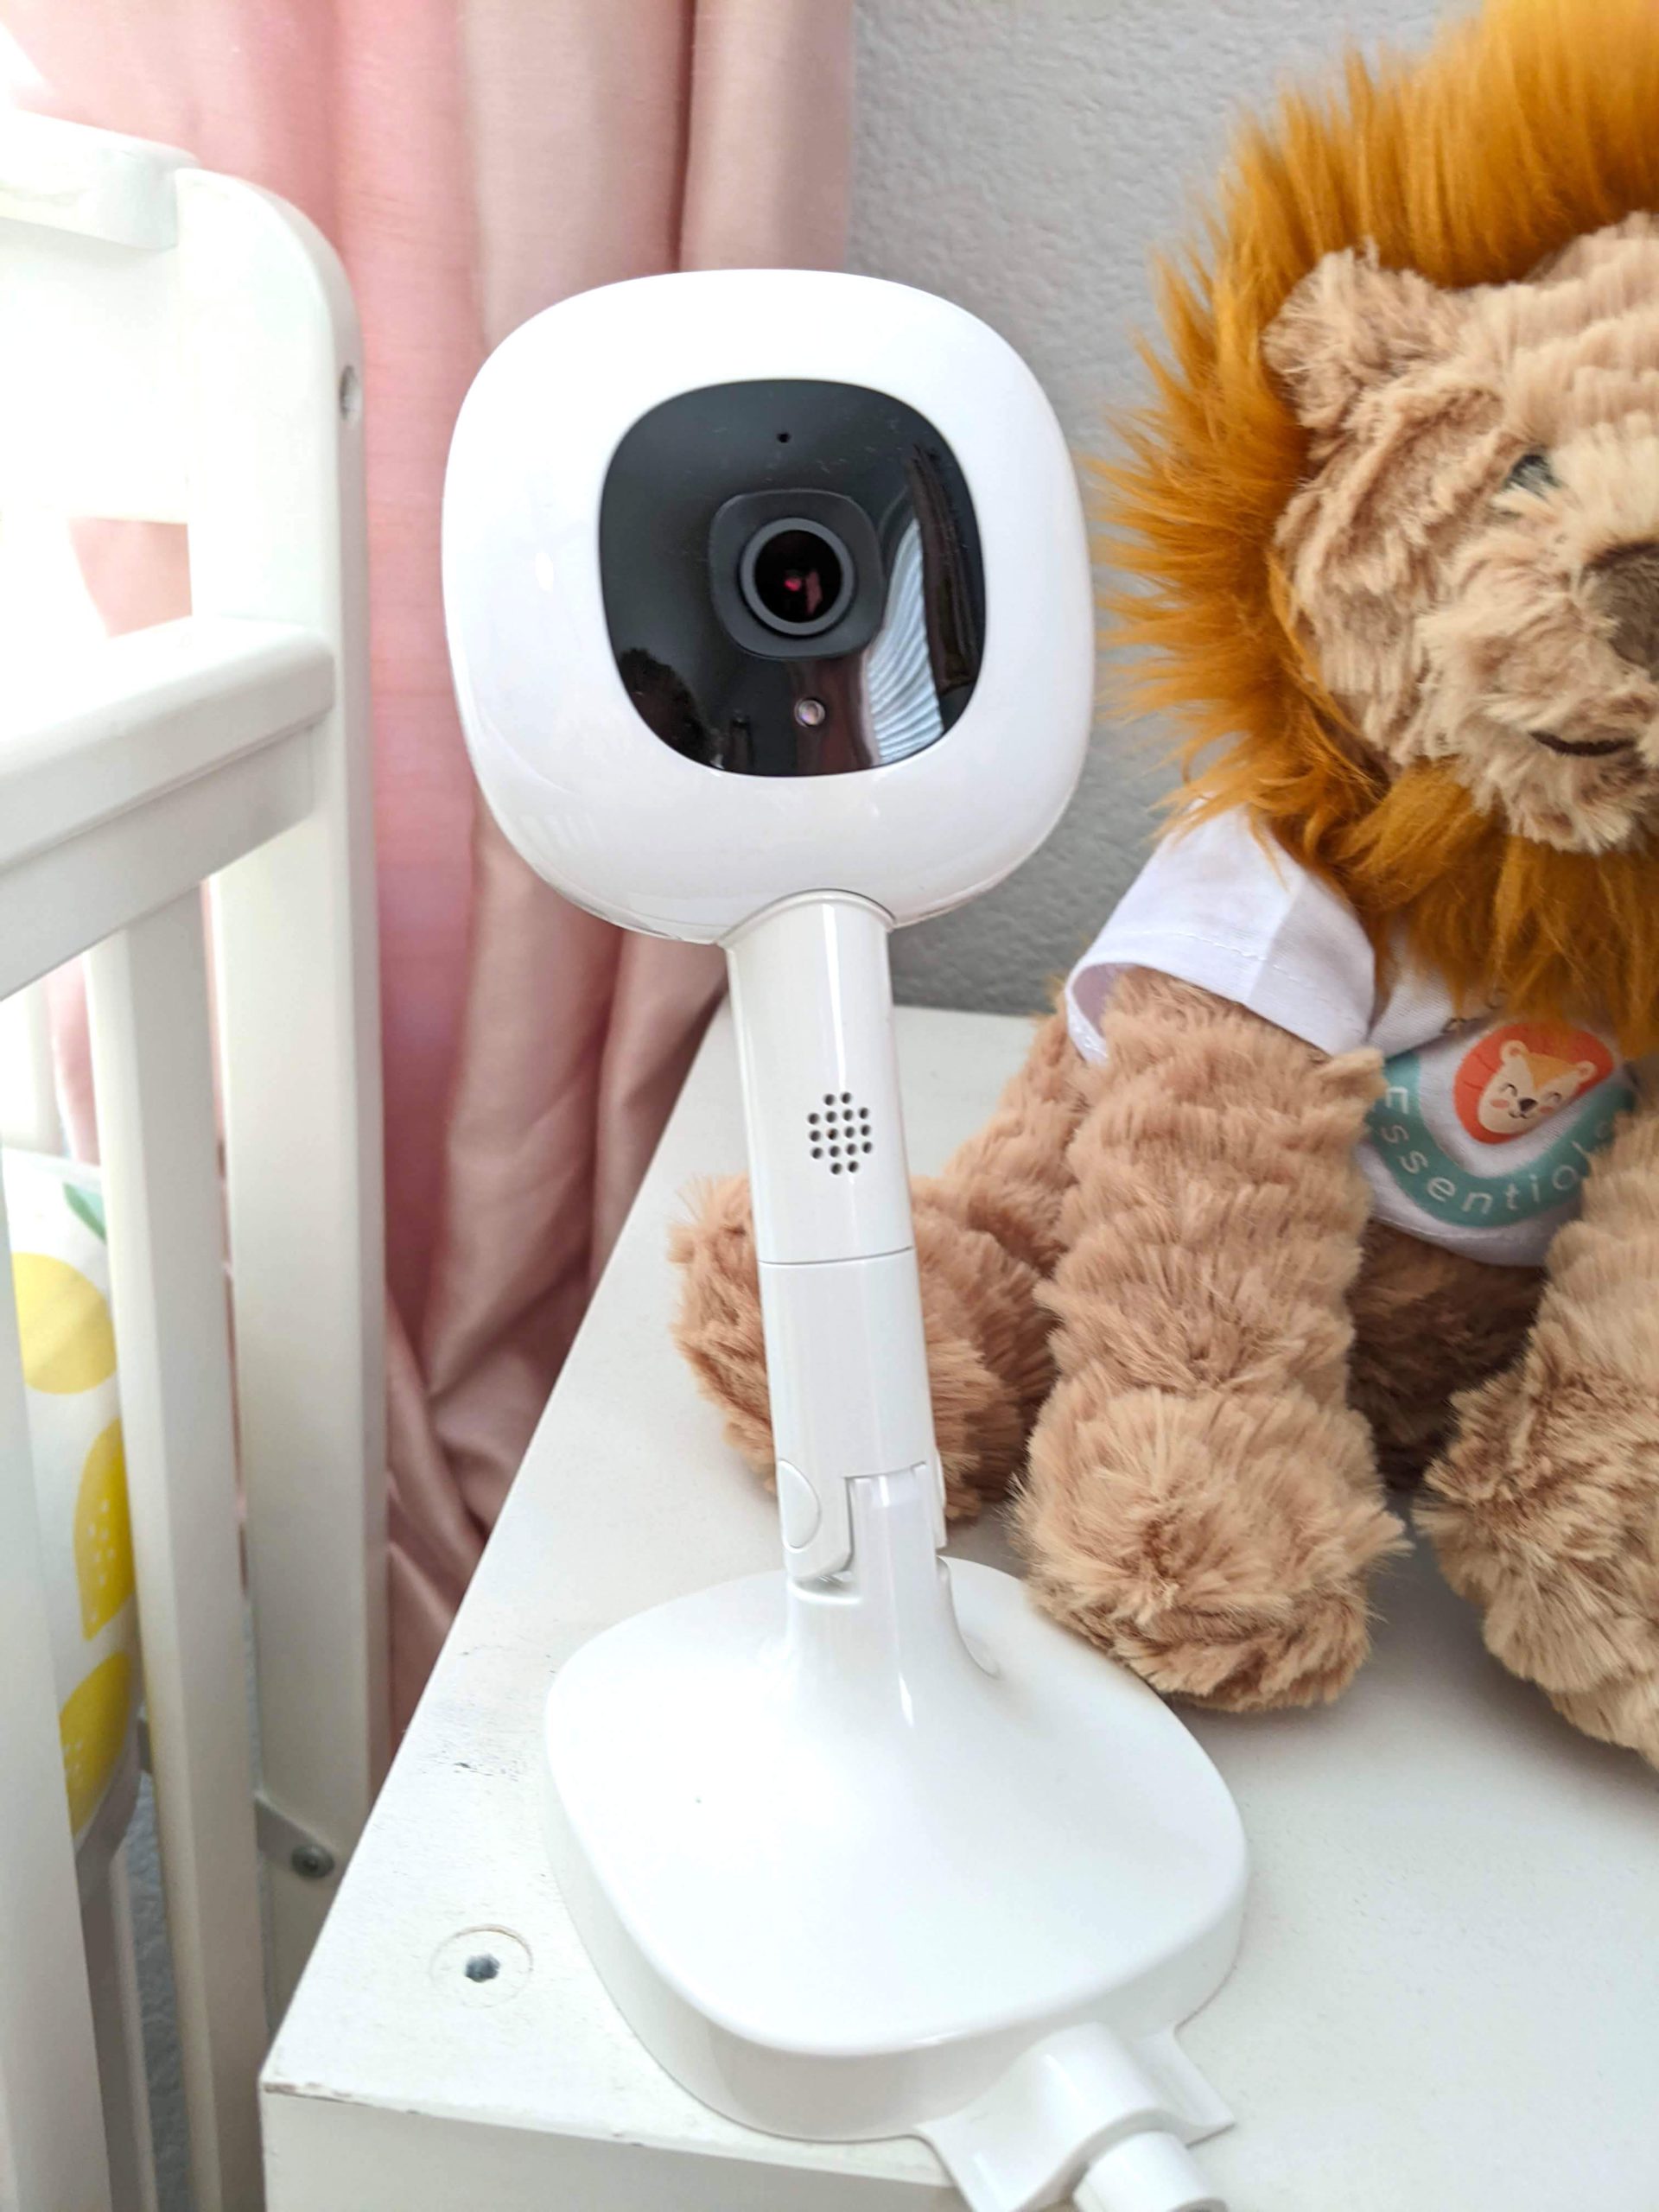 Nanit Pro baby monitor camera close up